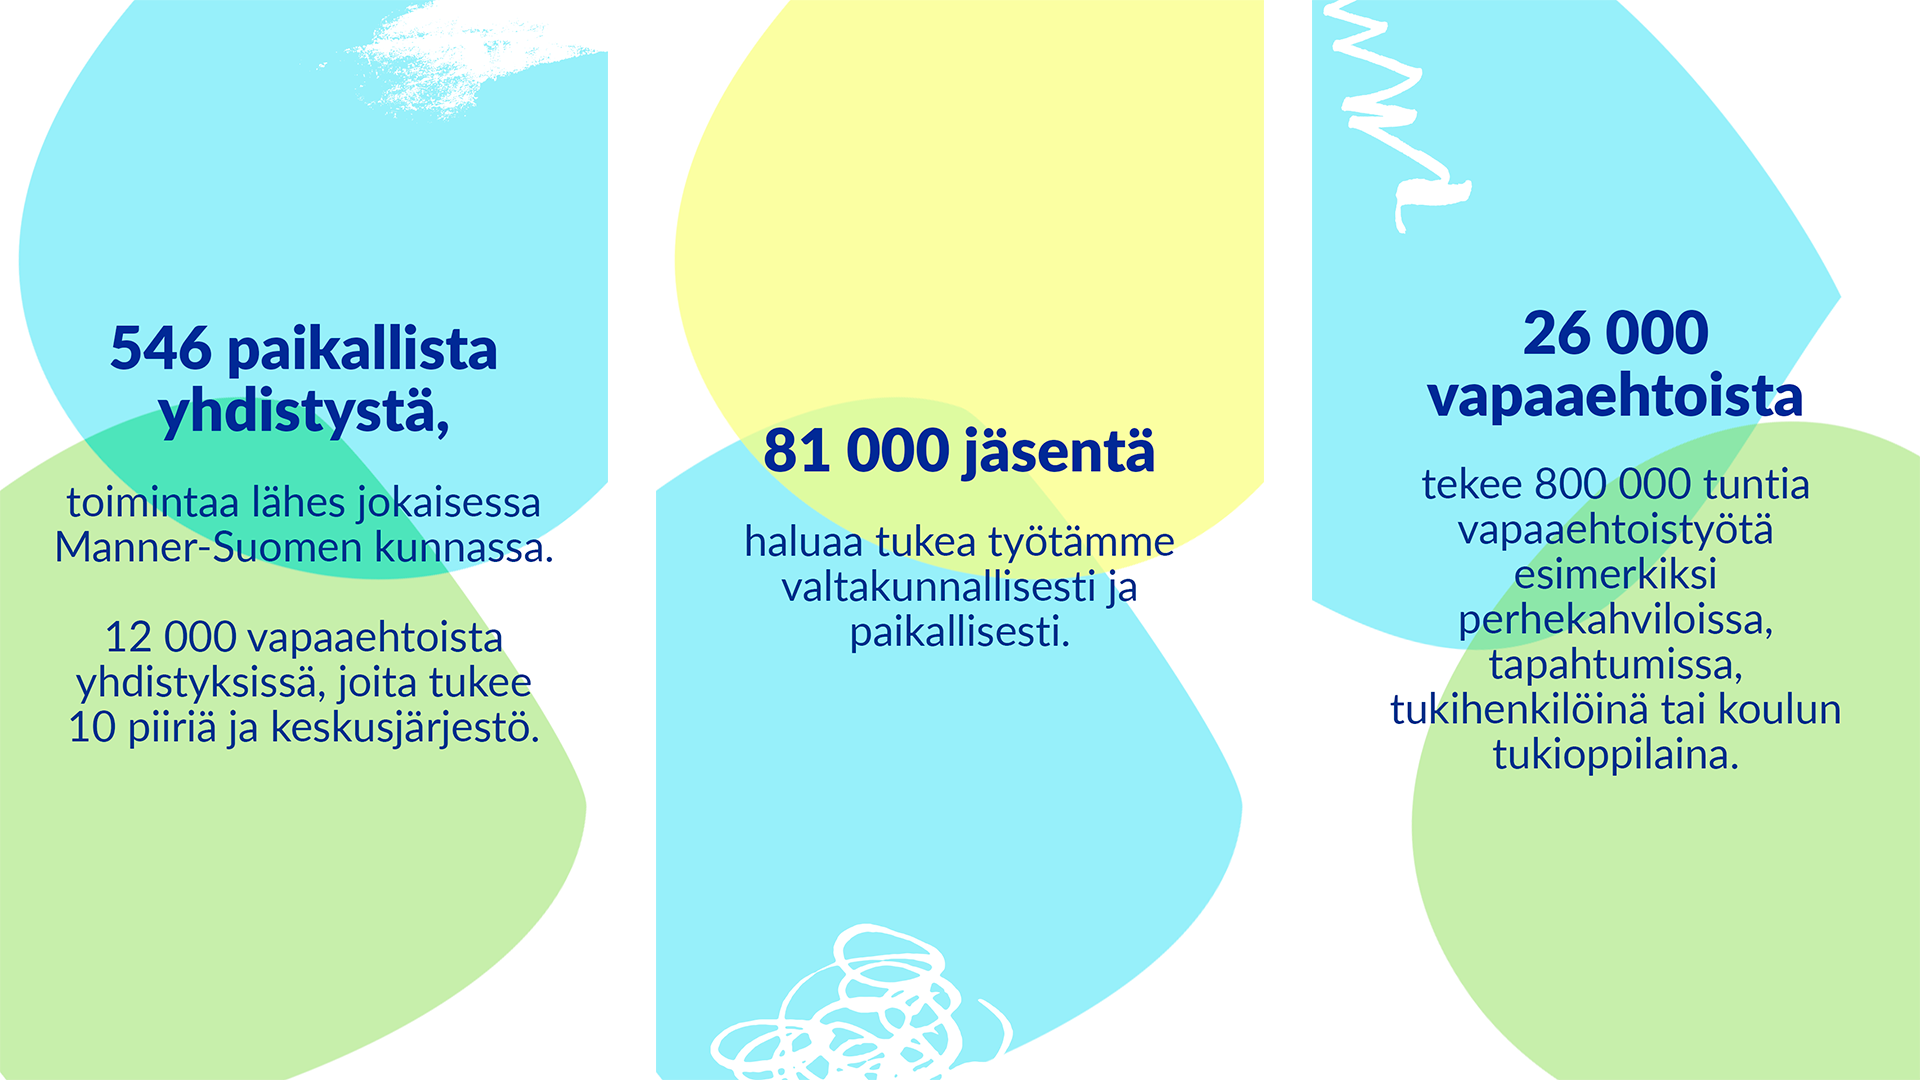 Sinisiä, keltaisia ja vihreitä päällekkäisiä muotoja, joiden päällä lukee seuraavat teksti: 546 paikallista yhdistystä, toimintaa lähes jokaisessa Manner-Suomen kunnassa. 12 000 vapaaehtoista yhdistyksissä, joita tukee 10 piiriä ja keskusjärjestö.